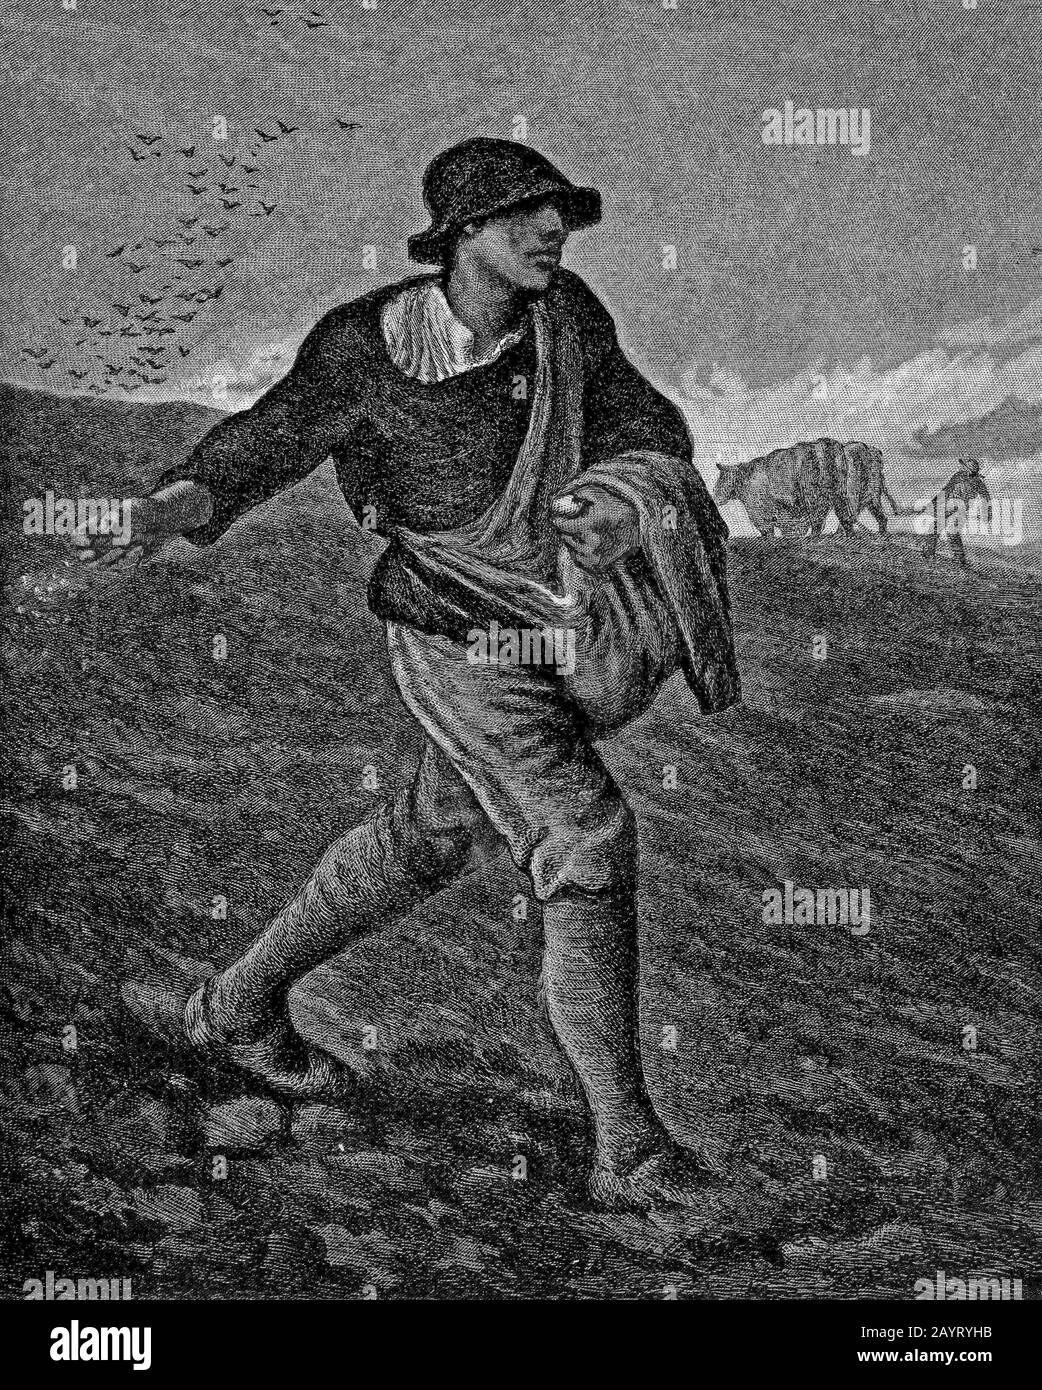 Ilustración de la pintura titulada 'El Sower' de Jean-François Millet (1814-1875), pintor francés y uno de los fundadores de la Escuela Barbizon. El mijo es conocido por sus escenas de campesinos y se clasifica como parte del movimiento artístico del realismo. Foto de stock